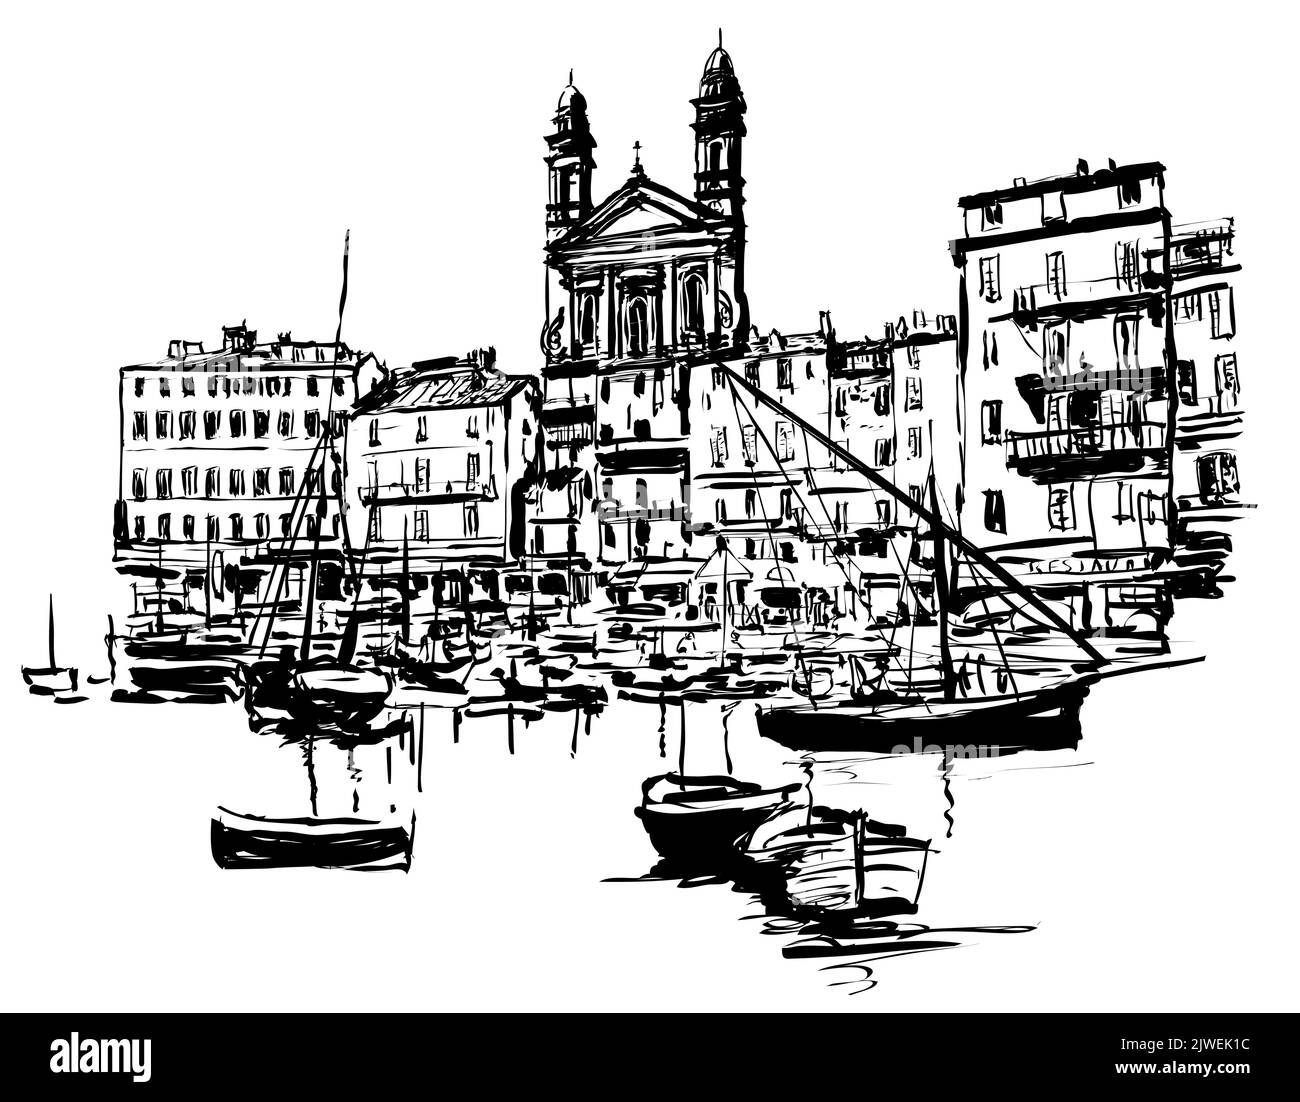 Bastia porto vecchio - Corsica, Francia - illustrazione vettoriale (ideale per la stampa su tessuto o carta, poster o carta da parati, decorazione della casa) Illustrazione Vettoriale